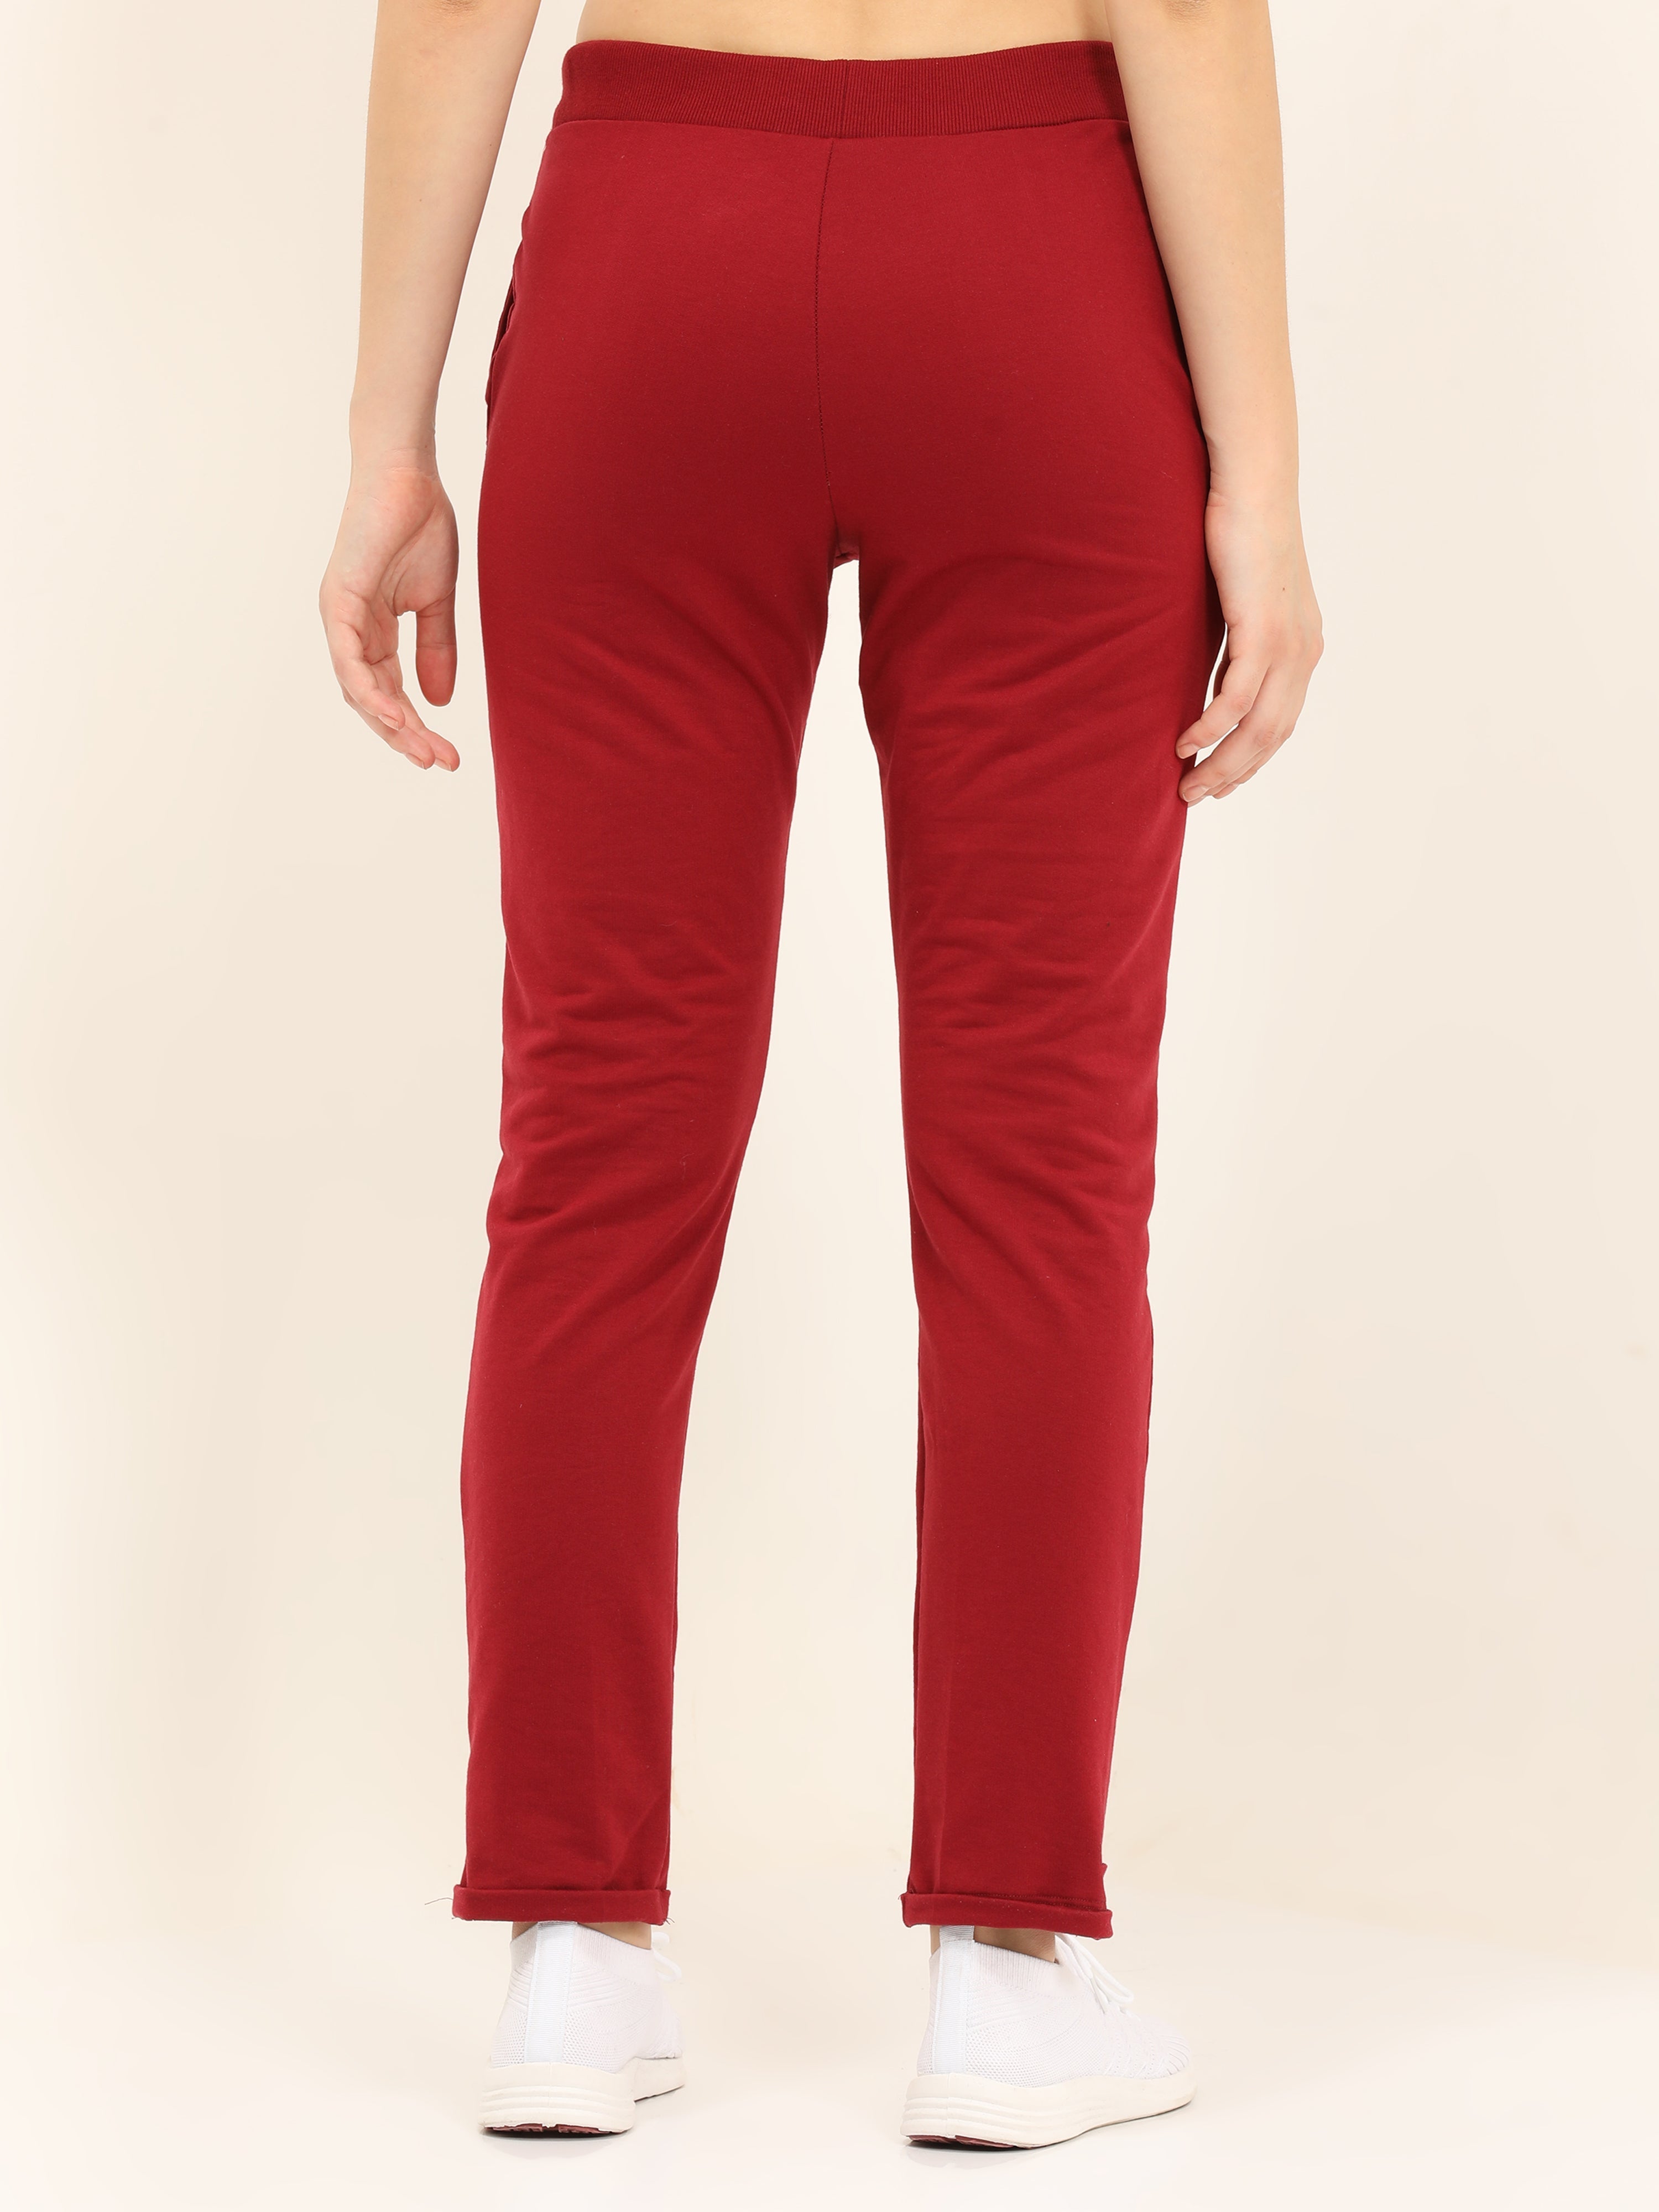 Nike Women's Lab Solo Swoosh Fleece Pants Night Maroon Size S CW5565 681 |  eBay